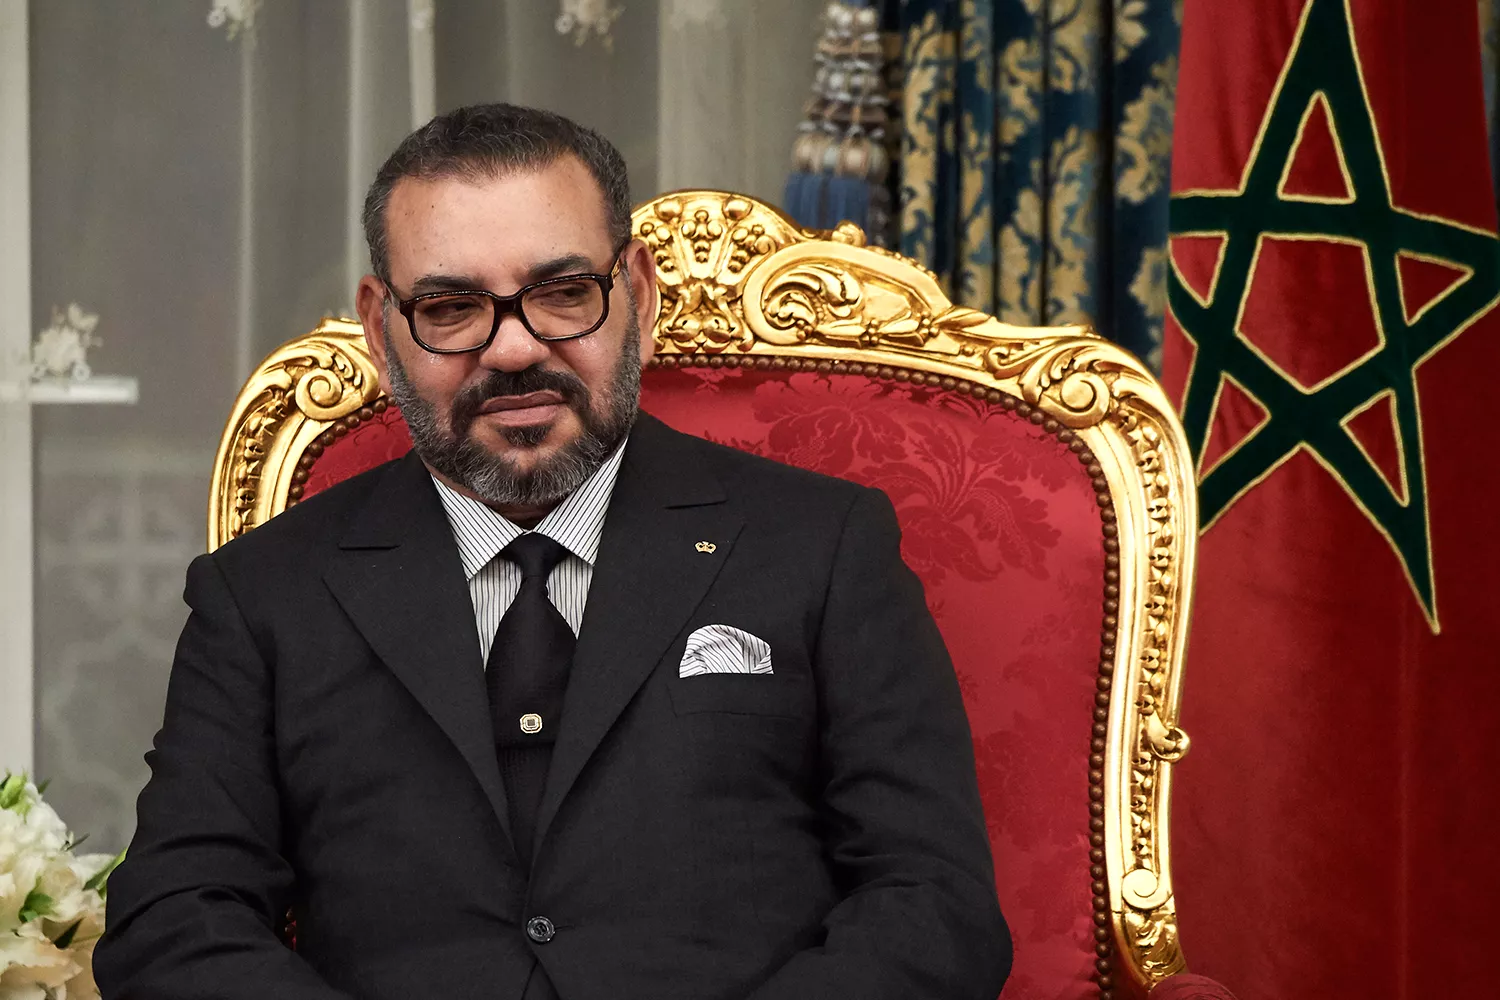 L’arribada de Mohamed VI al tron, el 1999, feia presagiar la transformació del Marroc en una democràcia plena